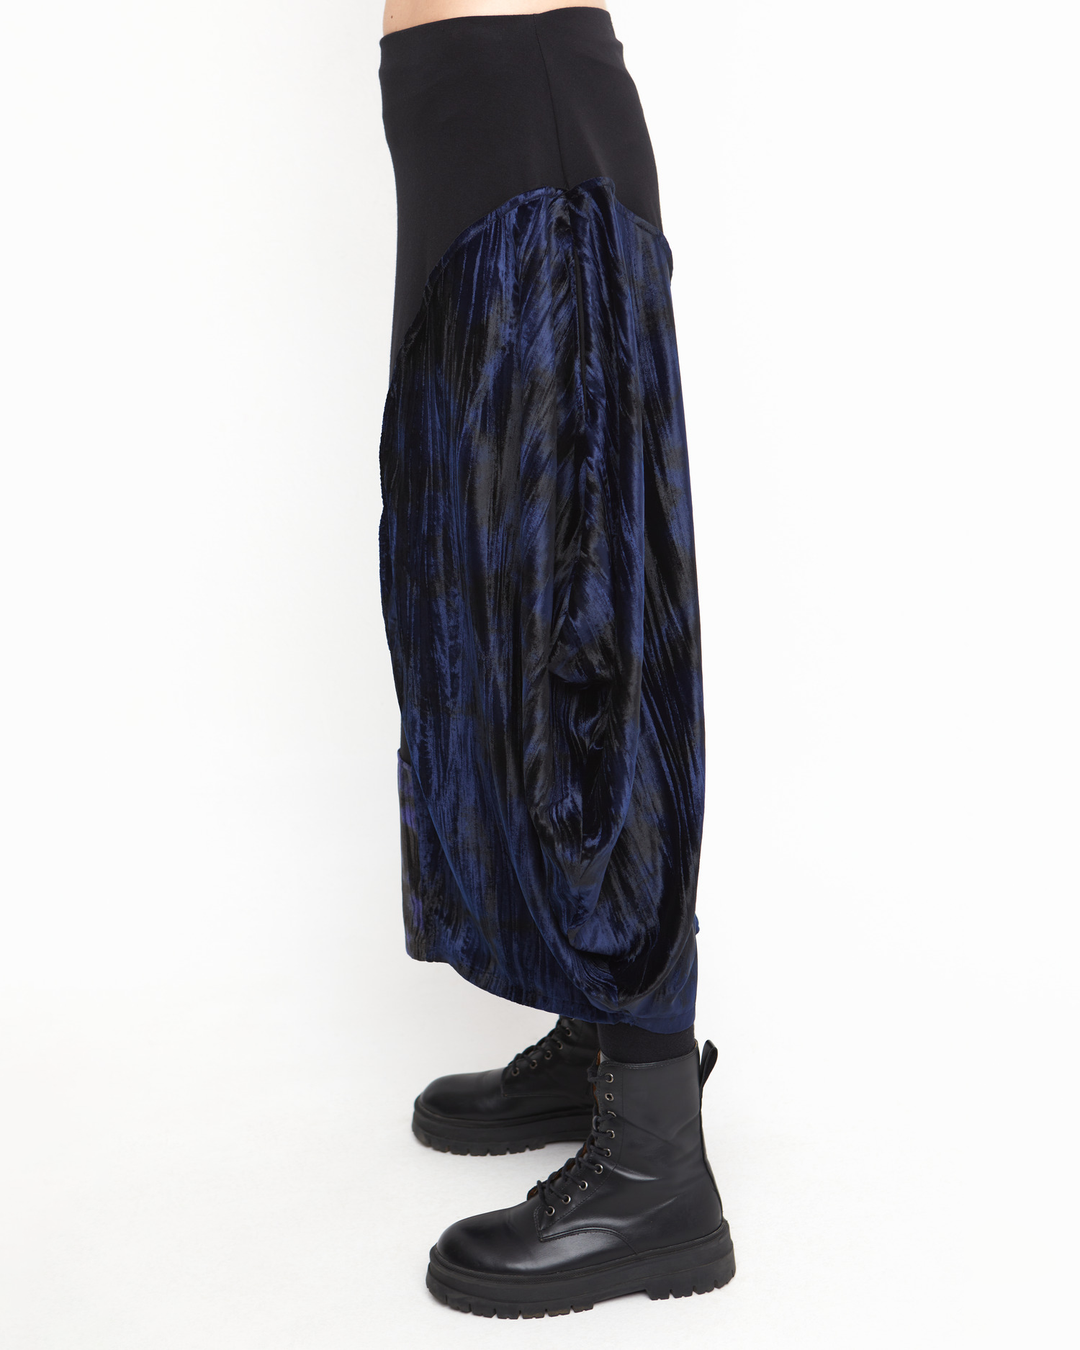 Ozai N Ku Piccadilly Midi Skirt, Black